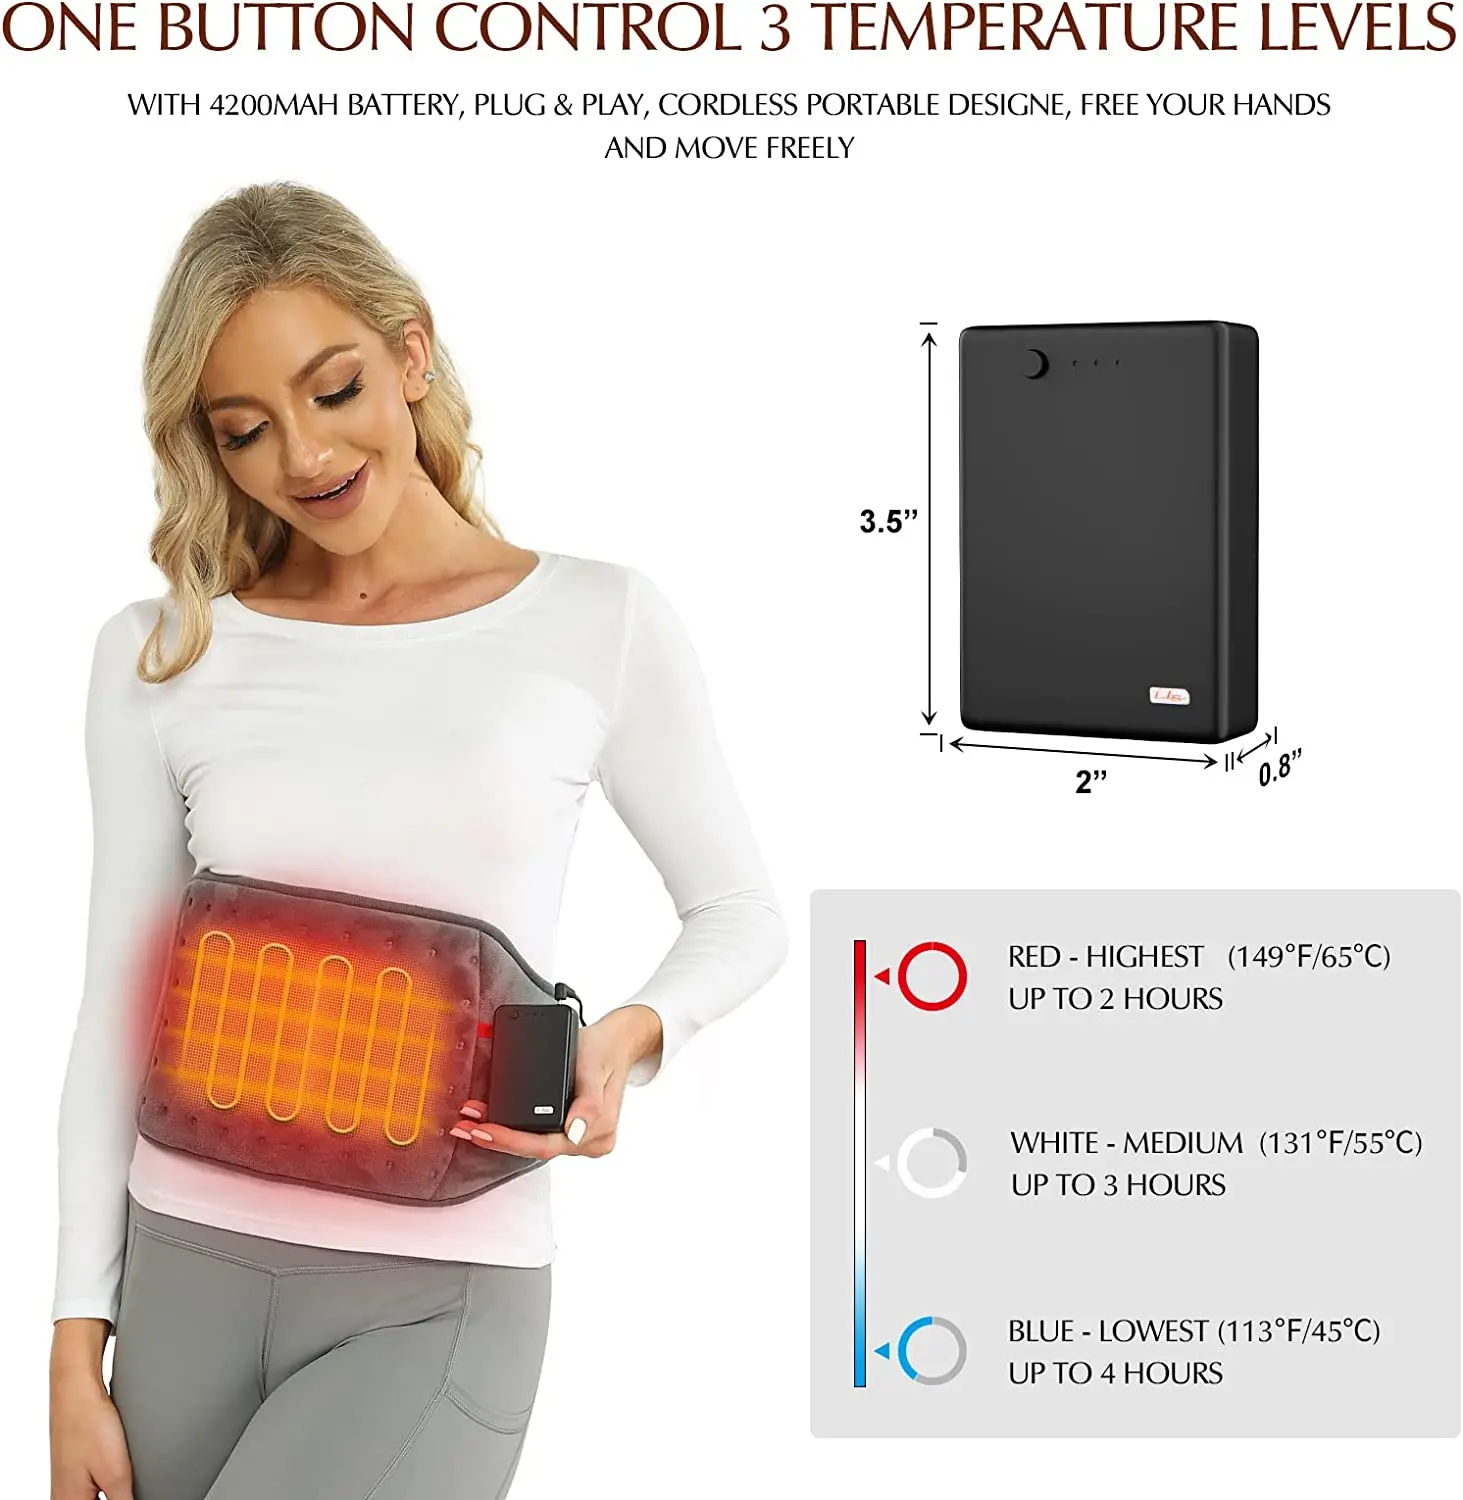 

Almohada Lumbar eléctrica manta eléctrica con batería 3 mantas de calefacción ajustables de temperatura para zona Lumbar, espald